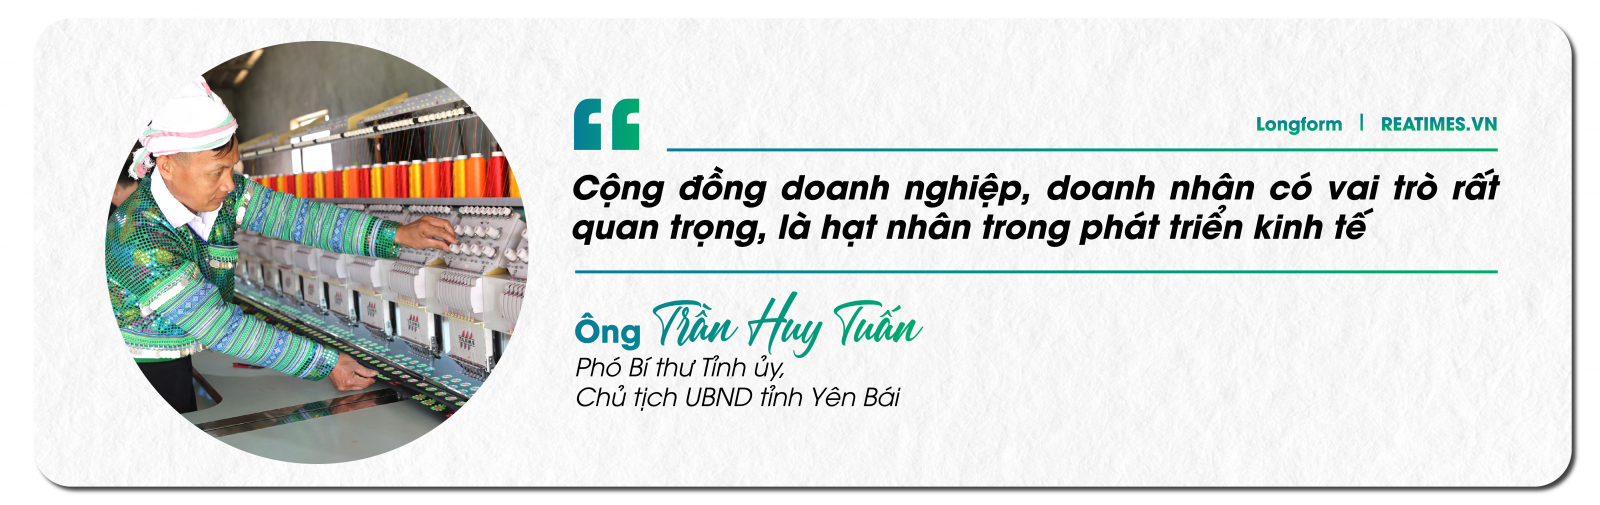 Chủ tịch UBND tỉnh Yên Bái: Khát vọng phát triển vì sự hài lòng, hạnh phúc của nhân dân